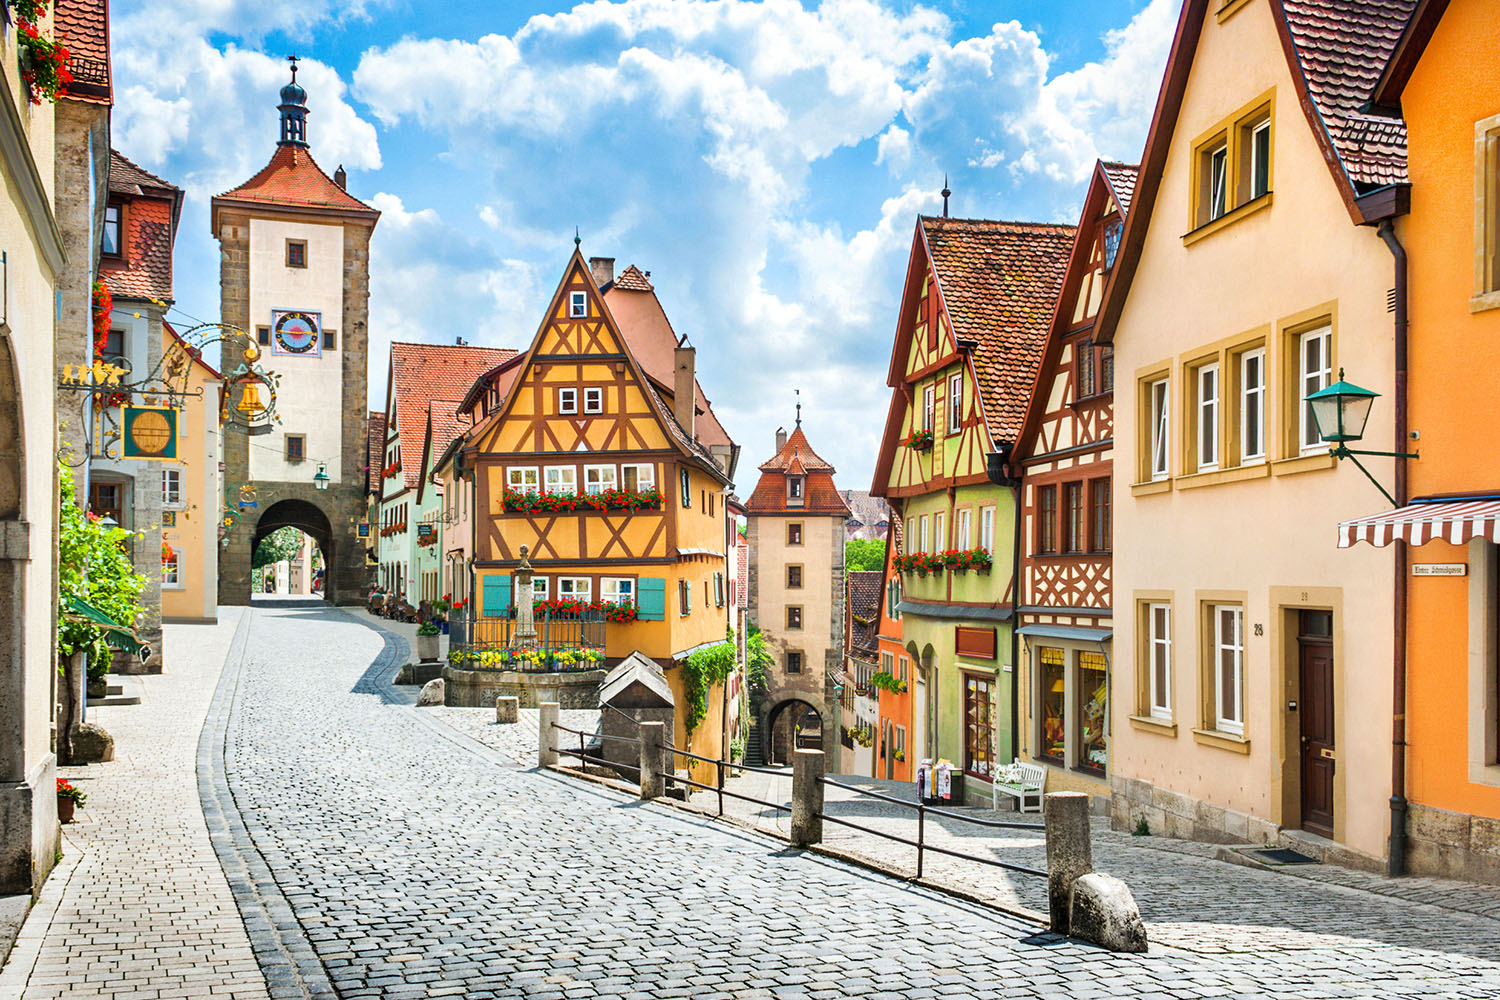 Deutschland von seiner charmantesten Seite: Rothenburg ob der Tauber mit seinen historischen Türmen und Torhäusern vermittelt den Eindruck, direkt in ein Grimm’sches Märchen spaziert zu sein.